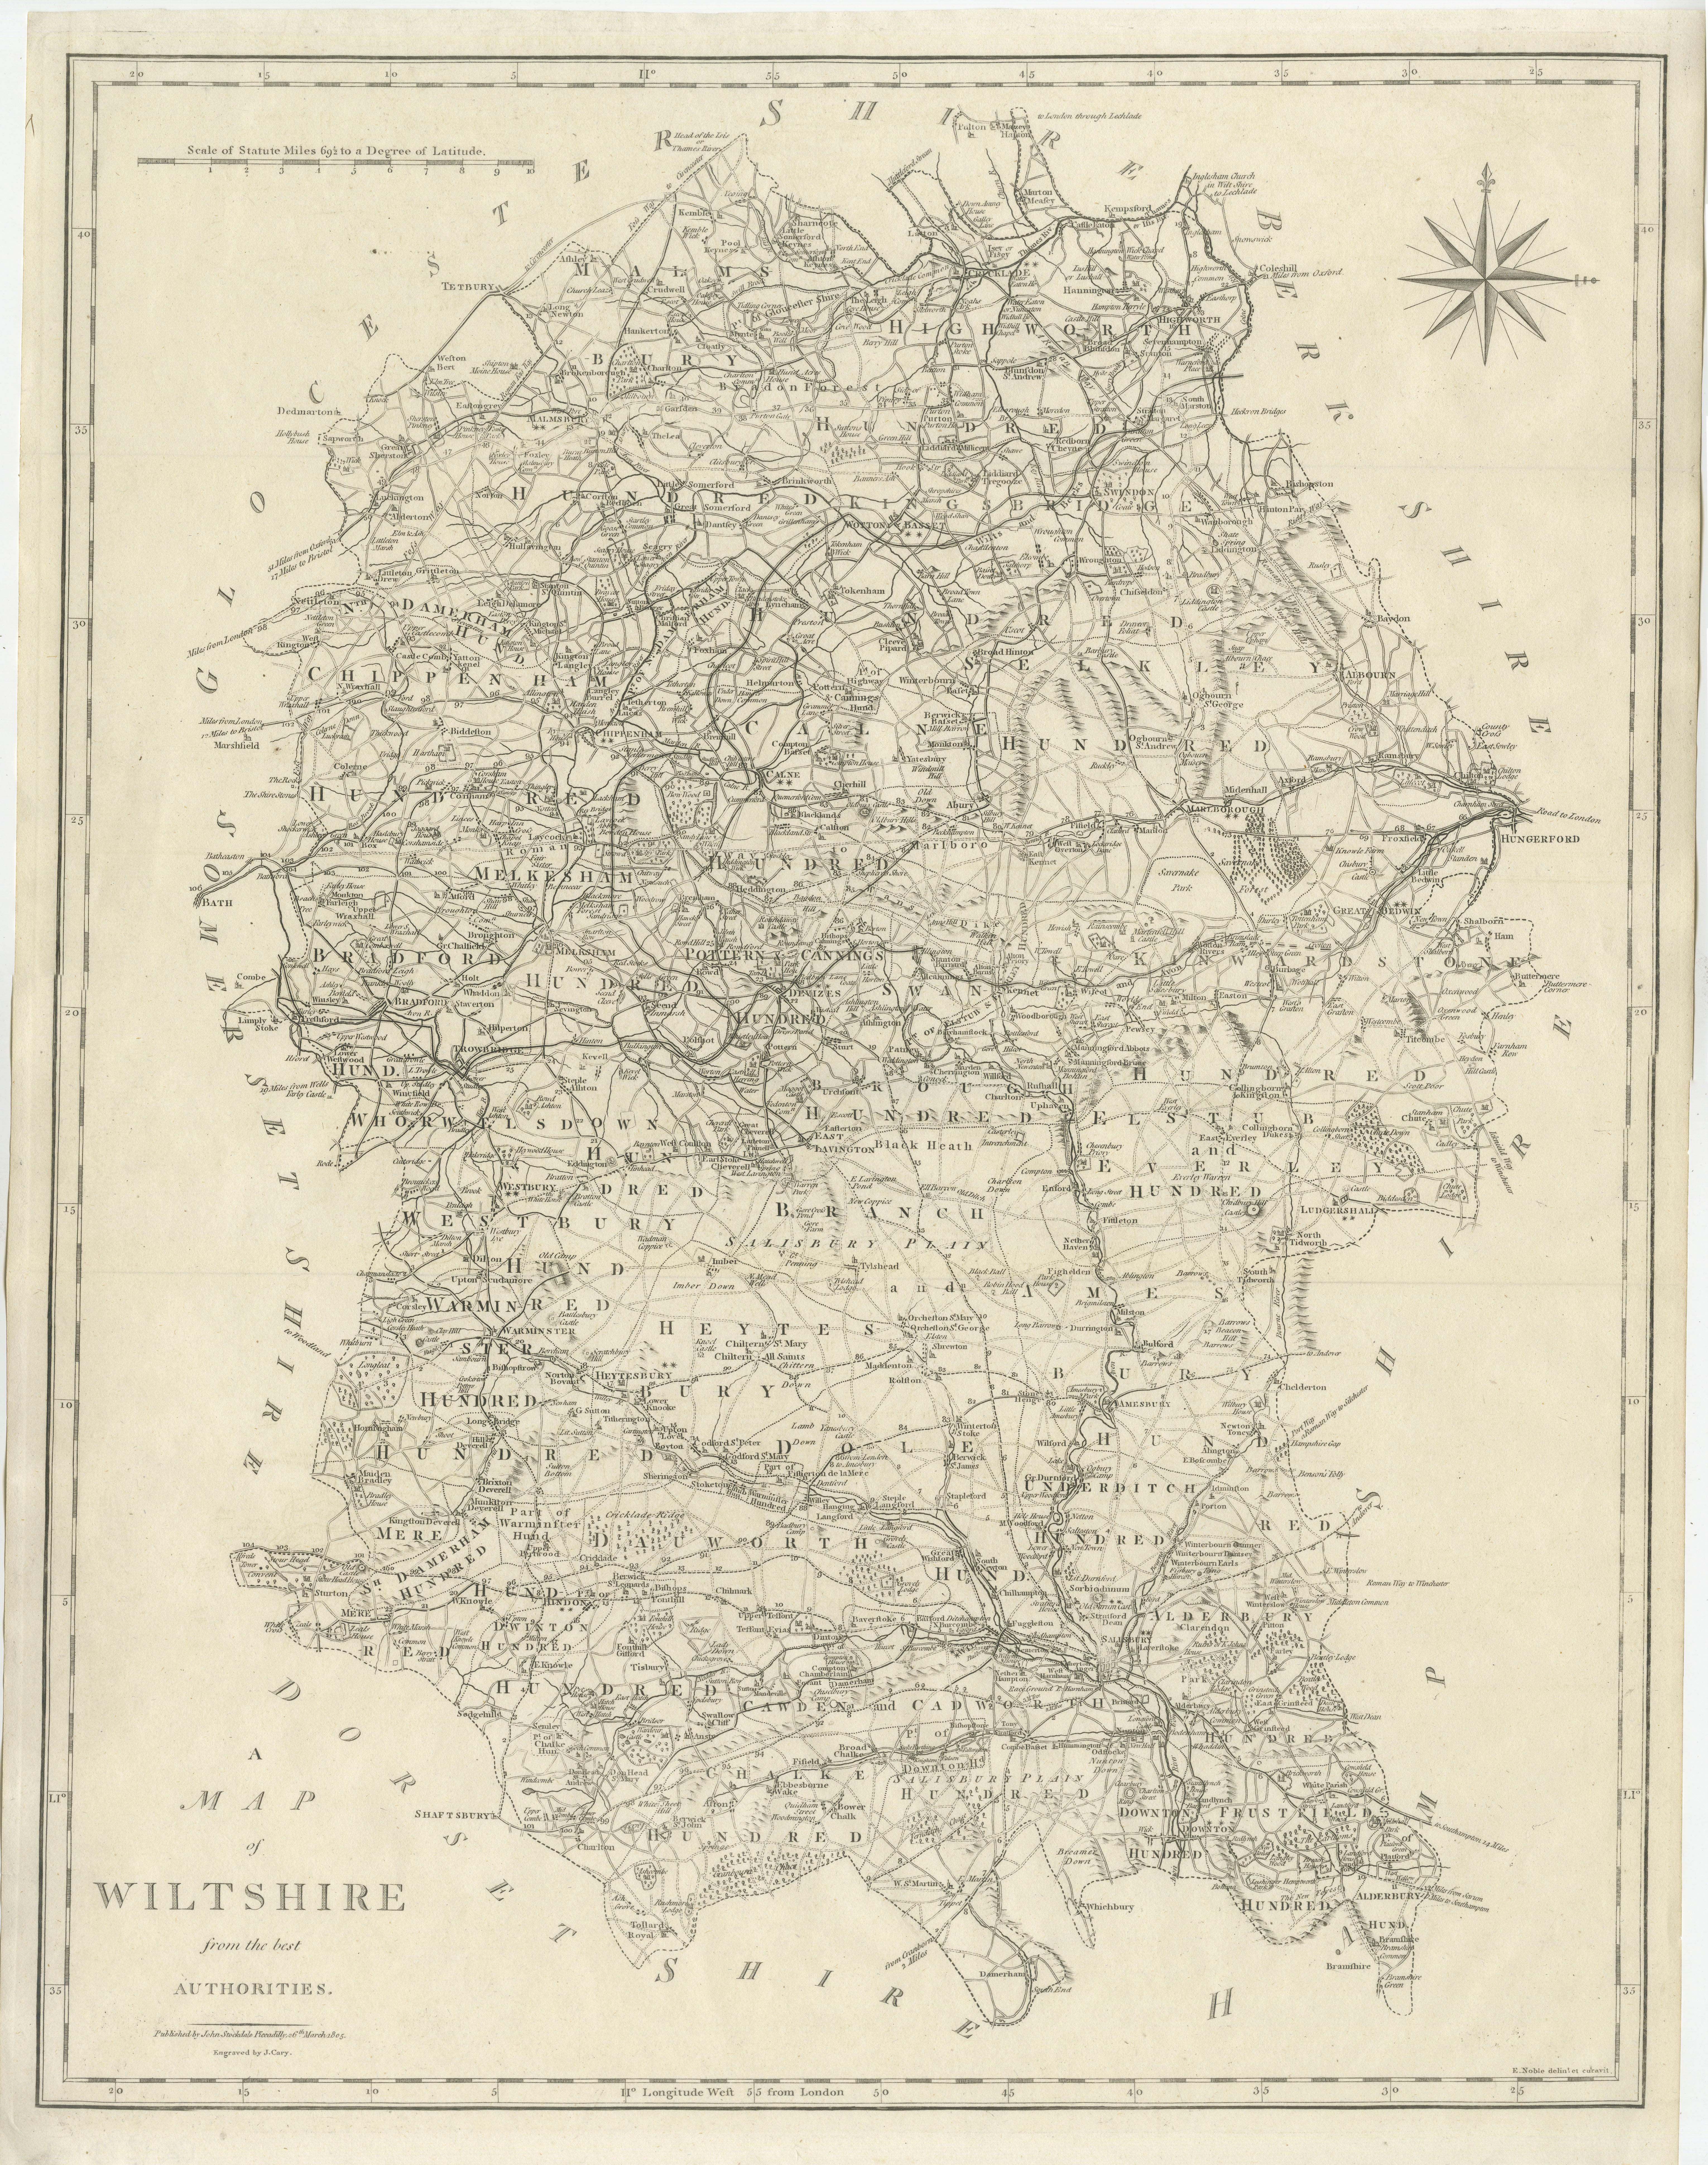 Antike Karte mit dem Titel 'A Map of Wiltshire from the best Authorities'. Original alte Grafschaftskarte von Wiltshire, England. Gestochen von John Cary's. Stammt aus dem 